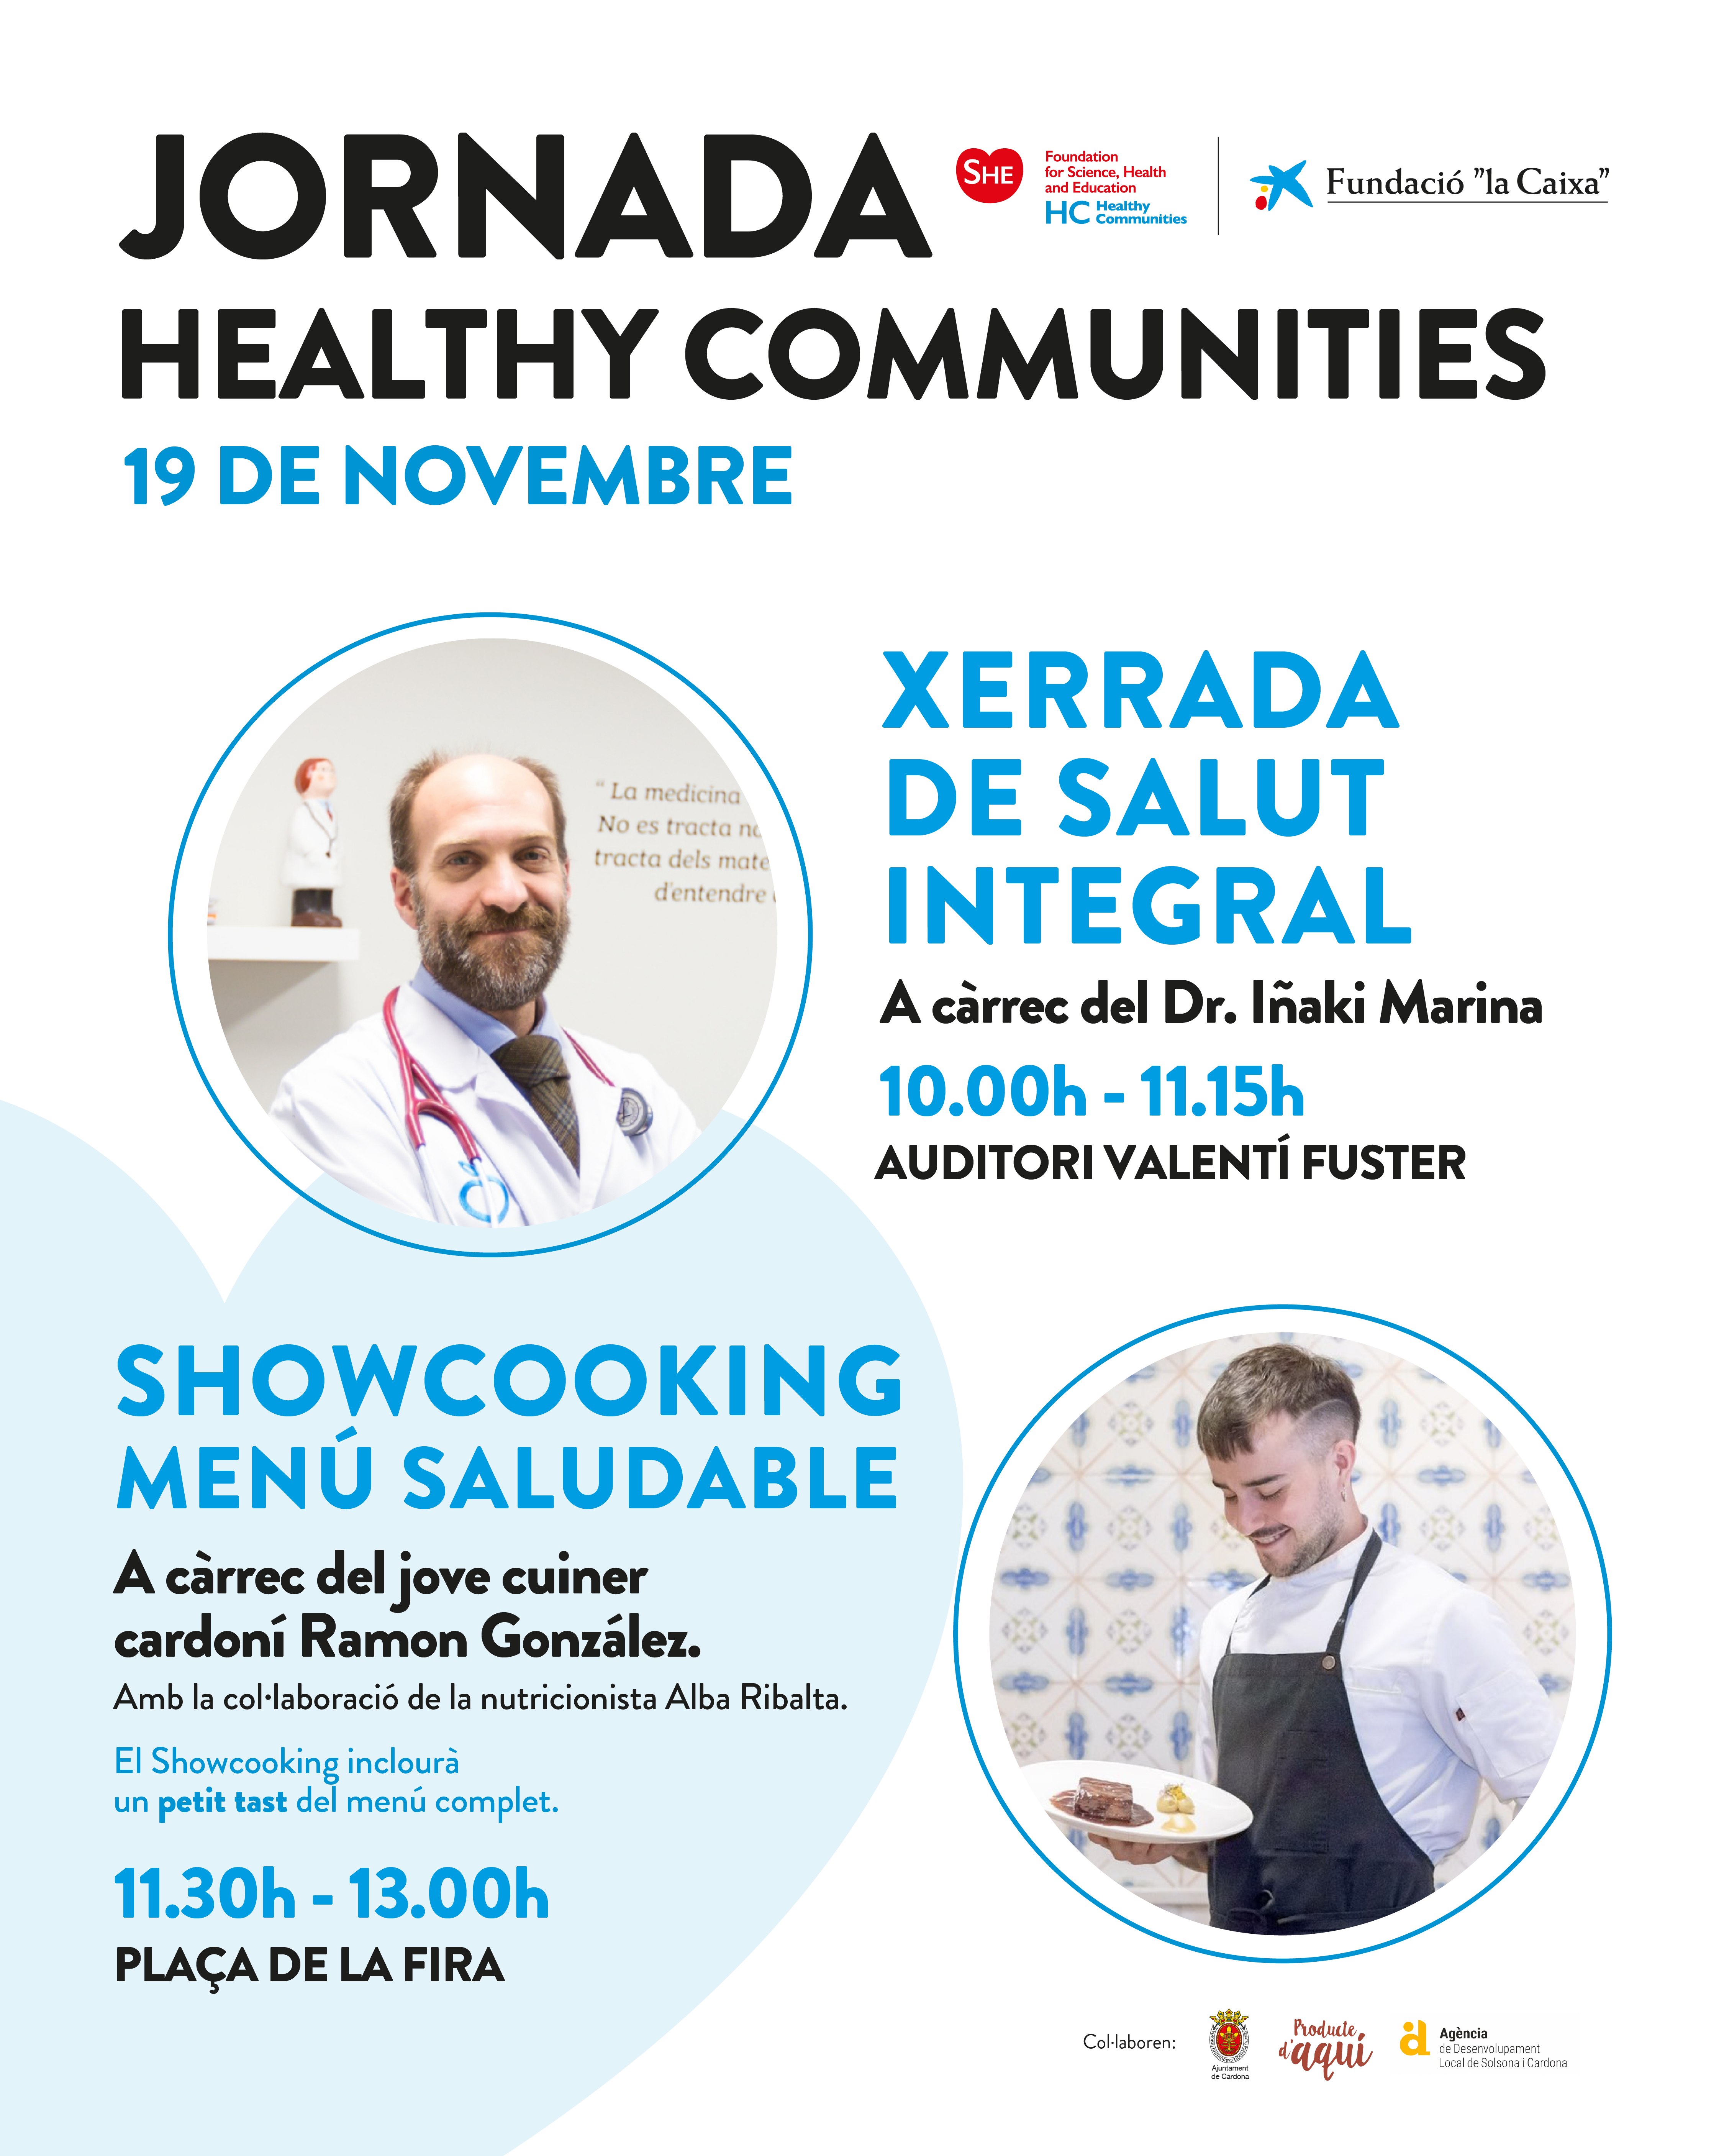 Jornada oberta Healthy Communities amb una xerrada de salut integral i un showcooking saludable